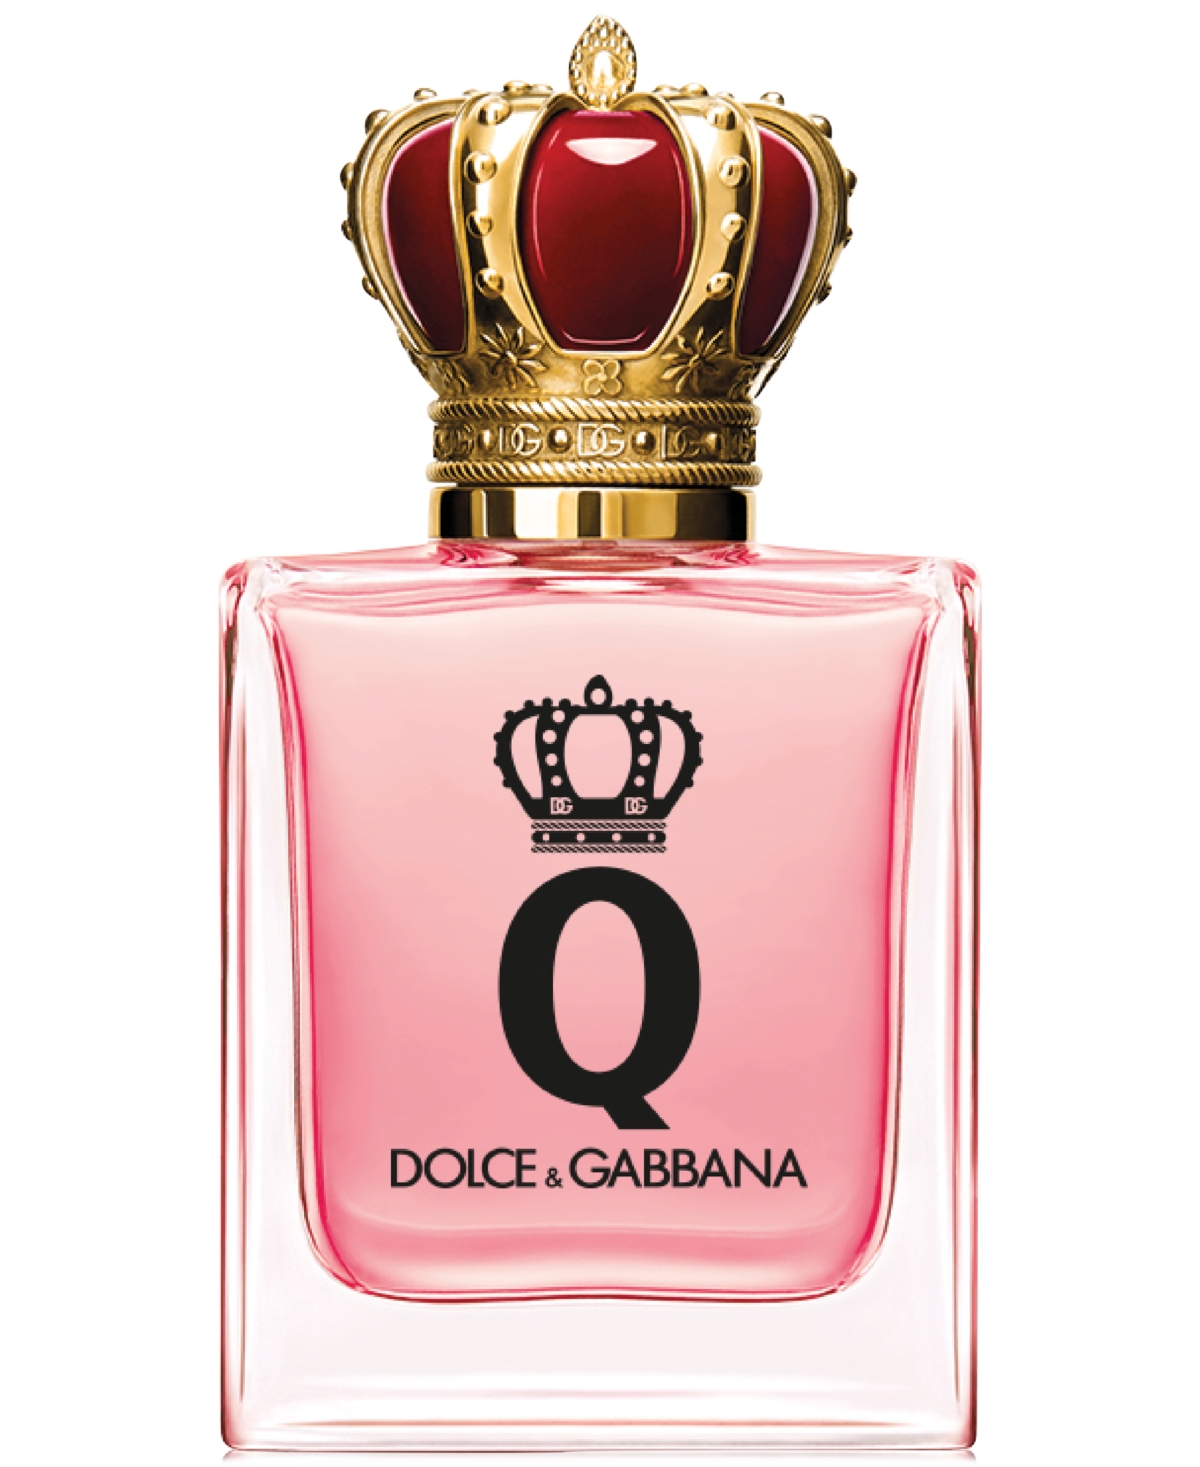 Dolce & Gabbana Q Eau De Parfum 1.7 oz / 50 ml Eau De Parfum Spray